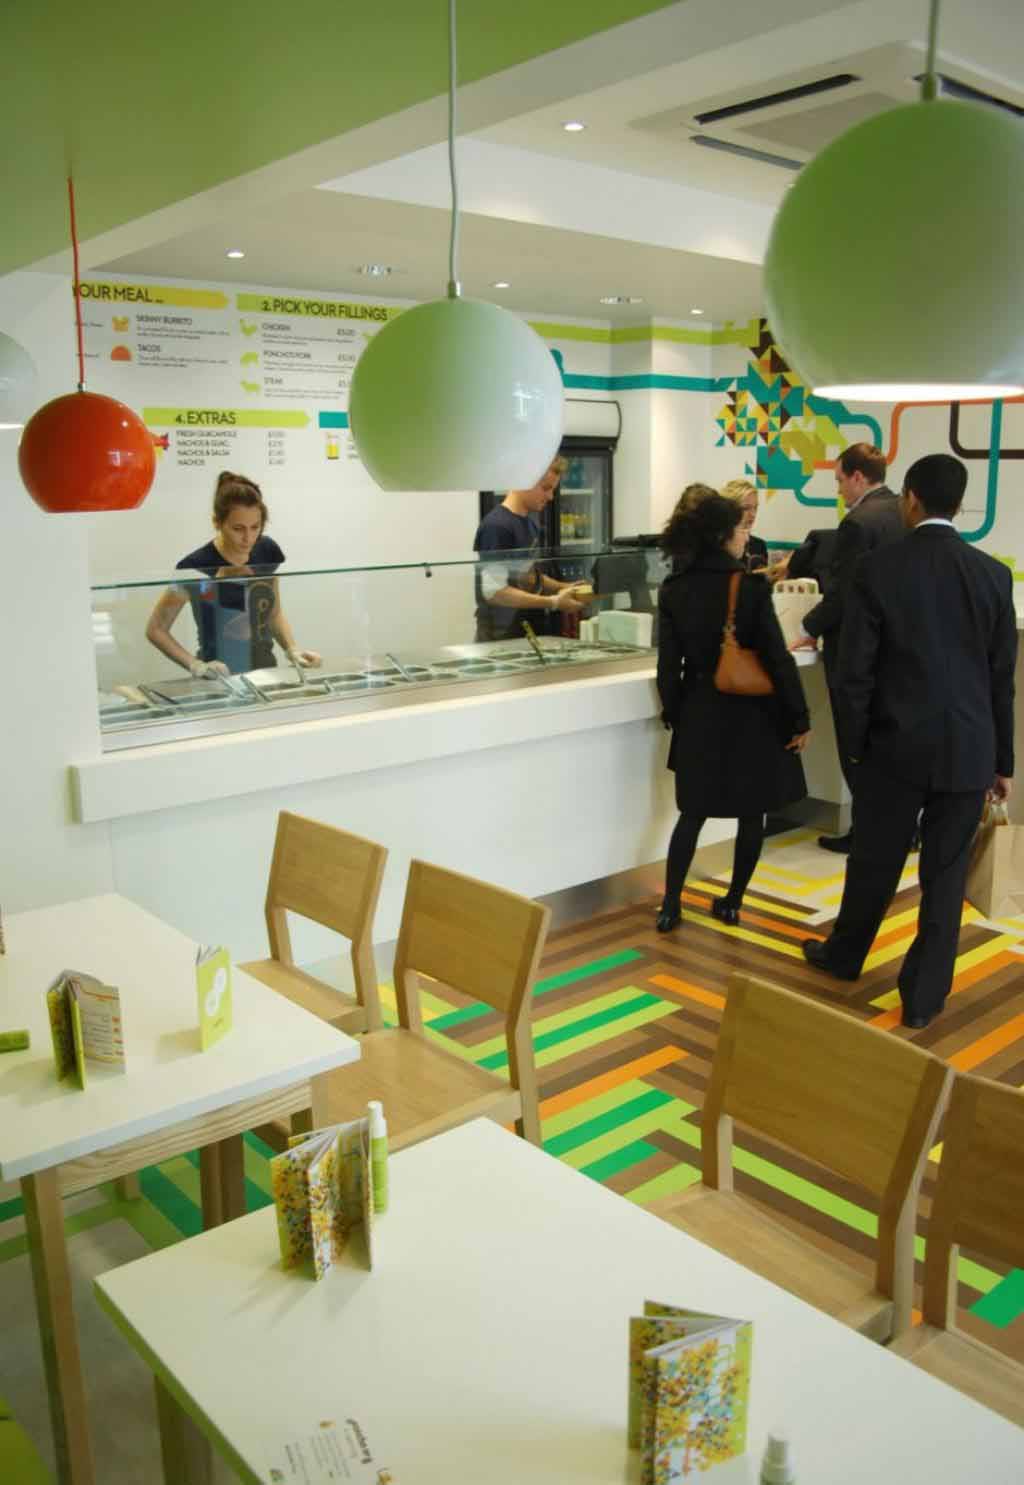 Desain Interior Rumah Makan Restoran Dan Cafe Minimalis Modern